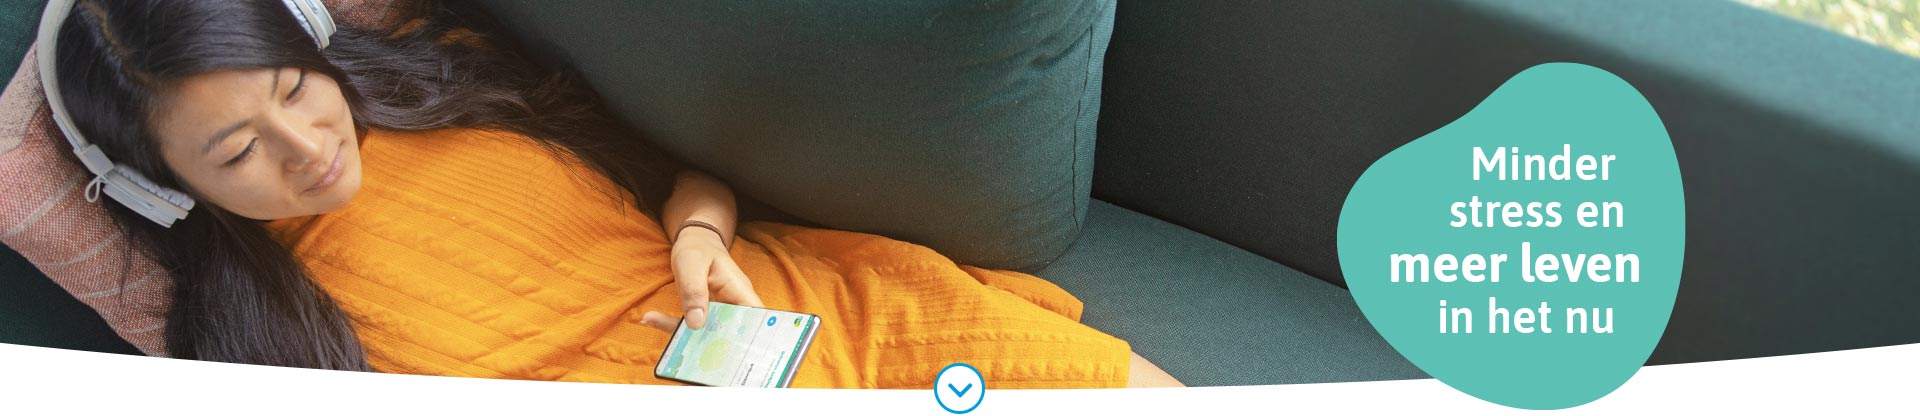 Afbeelding van een ontspannen vrouw die gebruikmaakt van de VGZ Mindfulness coach app via haar telefoon